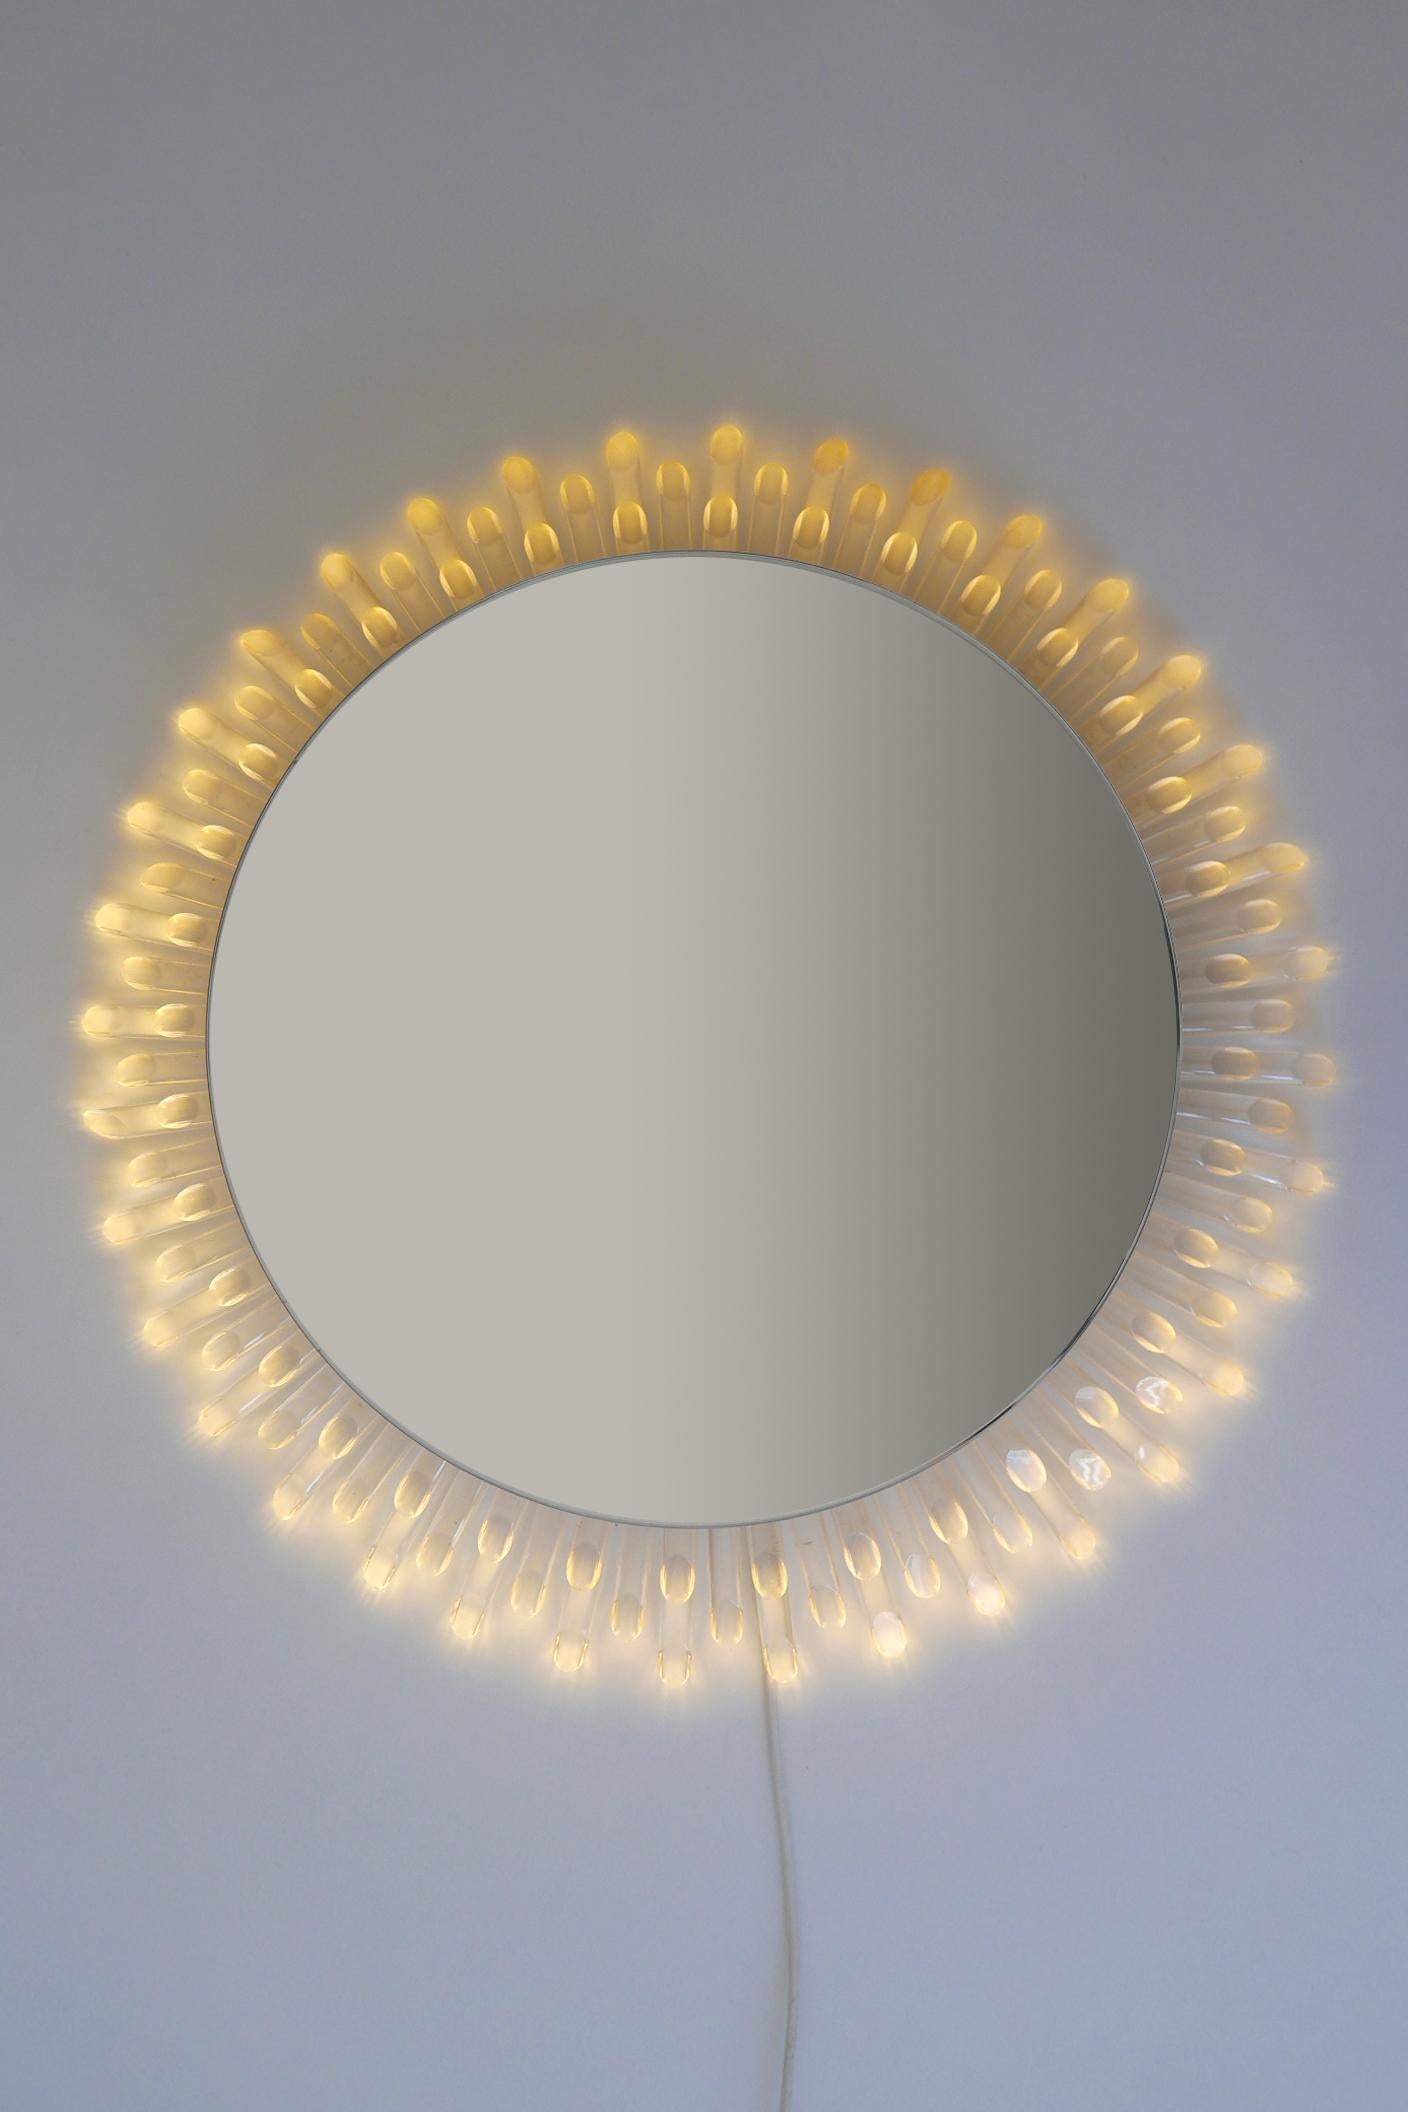 Un véritable bijou pour votre maison ! Rarissime, élégant et grand miroir mural circulaire rétro-éclairé en forme de soleil de la modernité du milieu du siècle. Conçue et fabriquée probablement en Allemagne, dans les années 1970

Il produit des